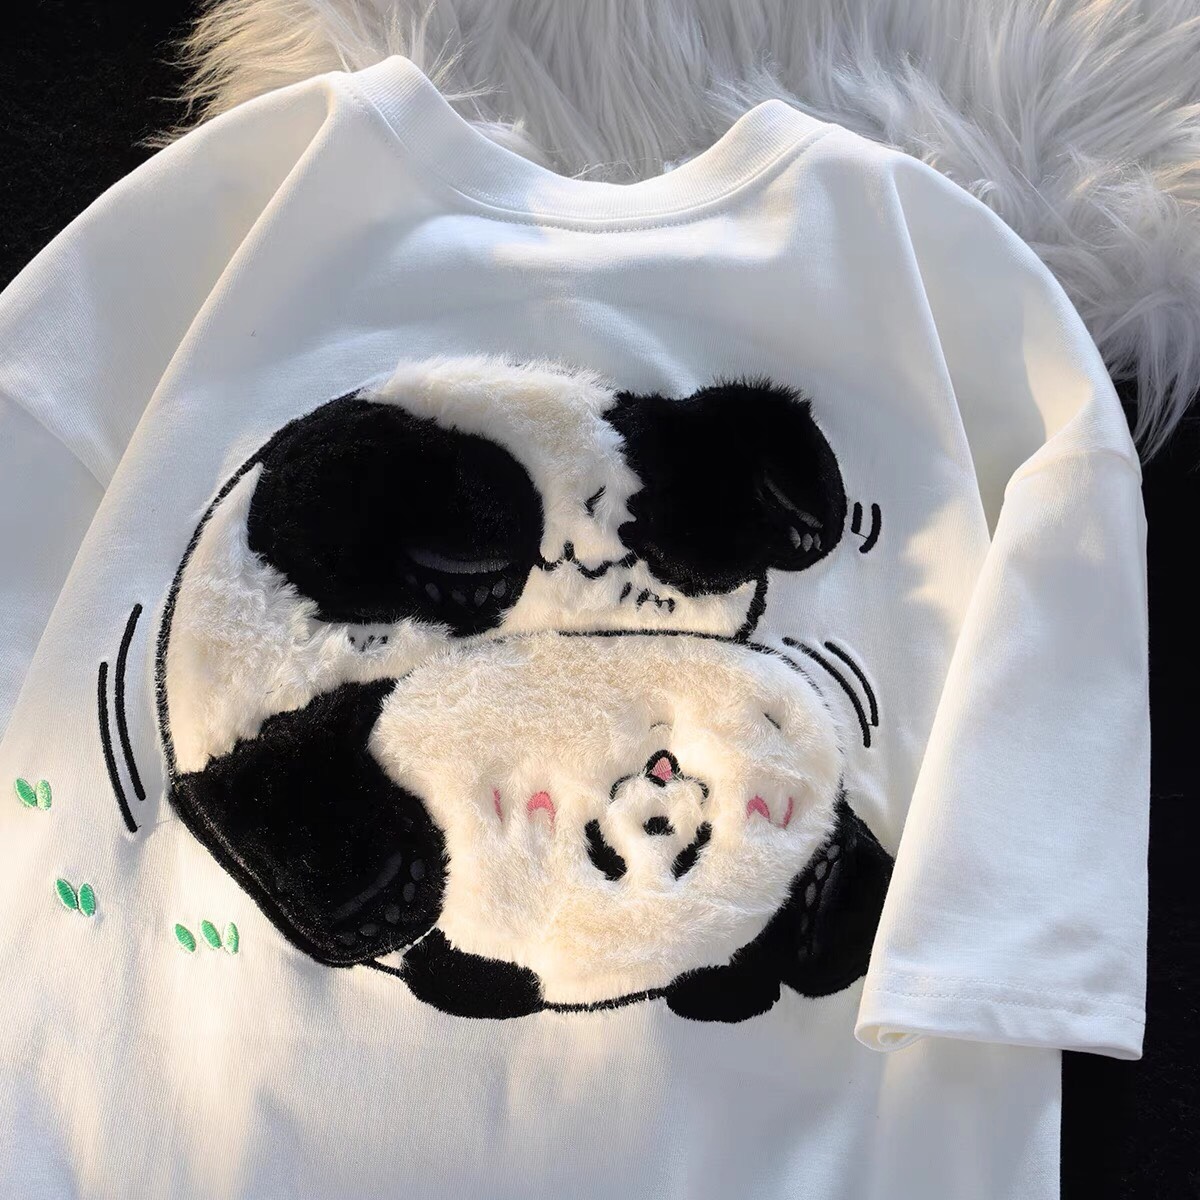 Áo phông nam nữ form rộng 2N Unisex thun cotton in hình gấu Panda thêu lông màu trắng/xanh